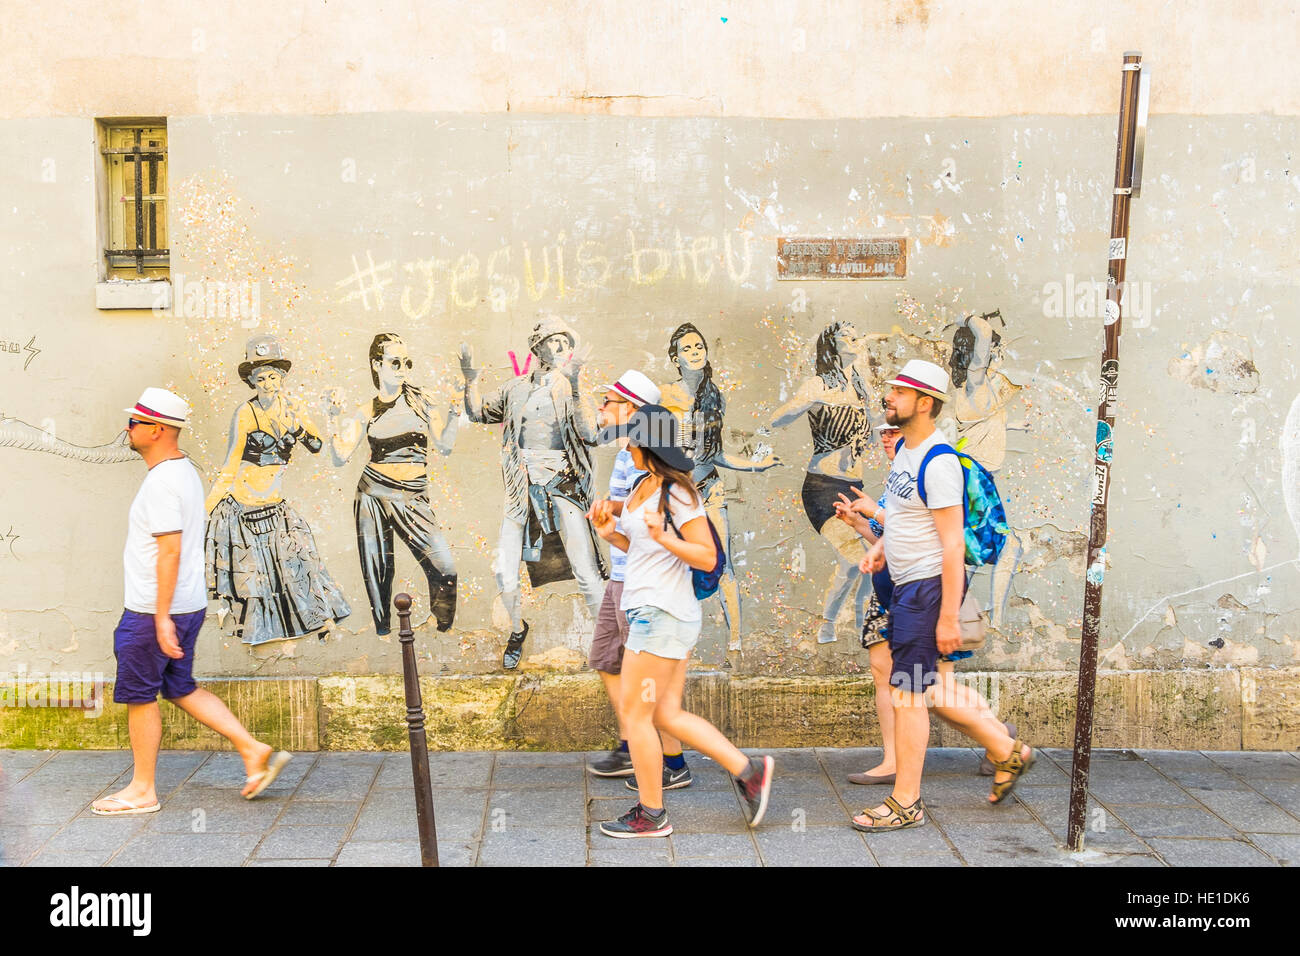 Straßenszene vor Graffito mit tanzenden jungen Menschen Stockfoto